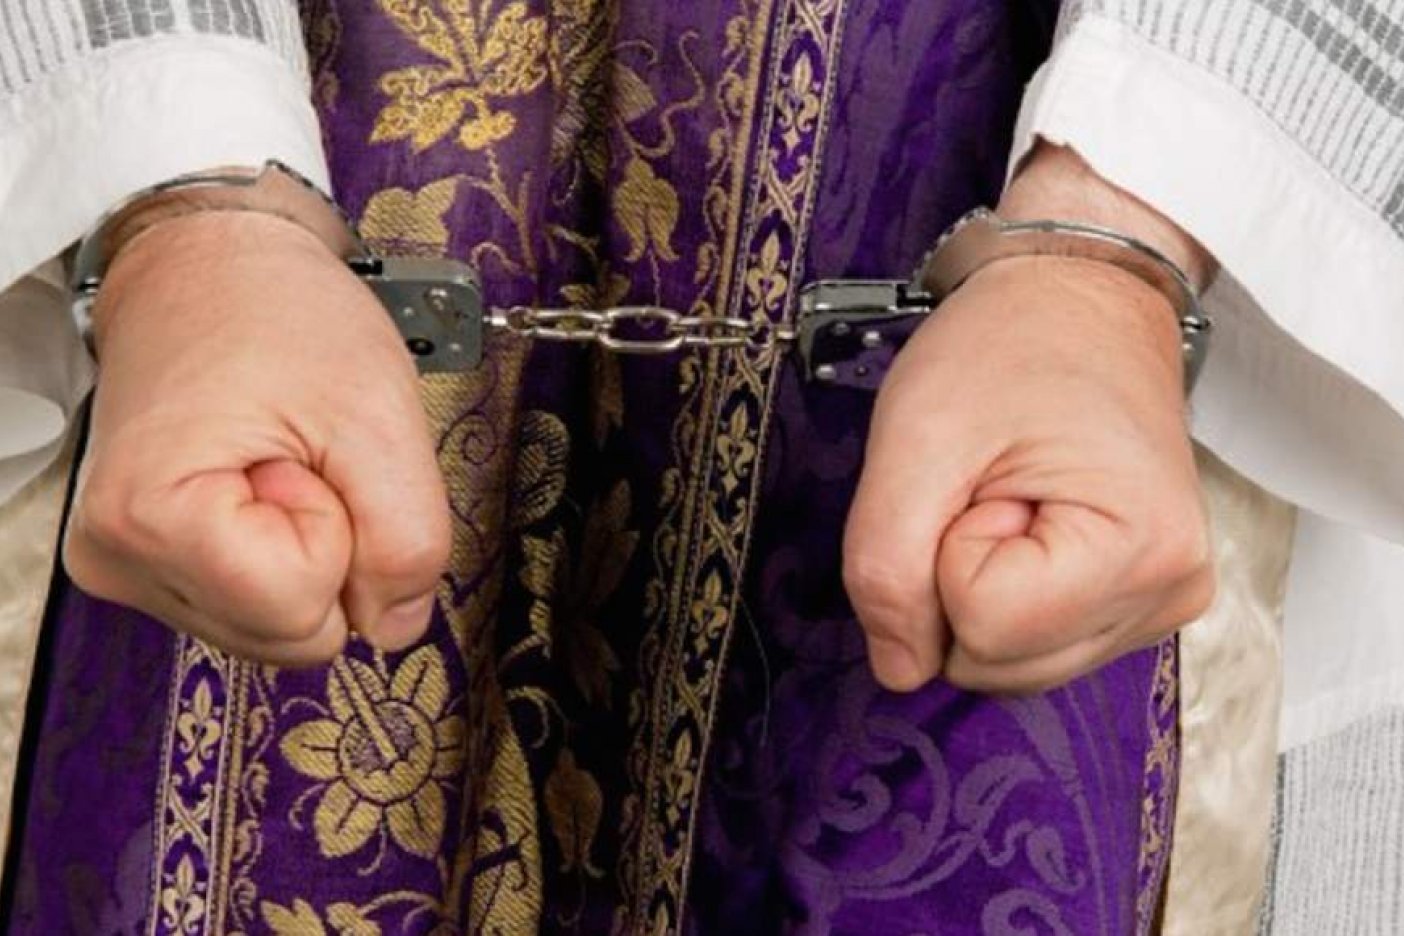  Detienen a sacerdote por abuso sexual en Morelos